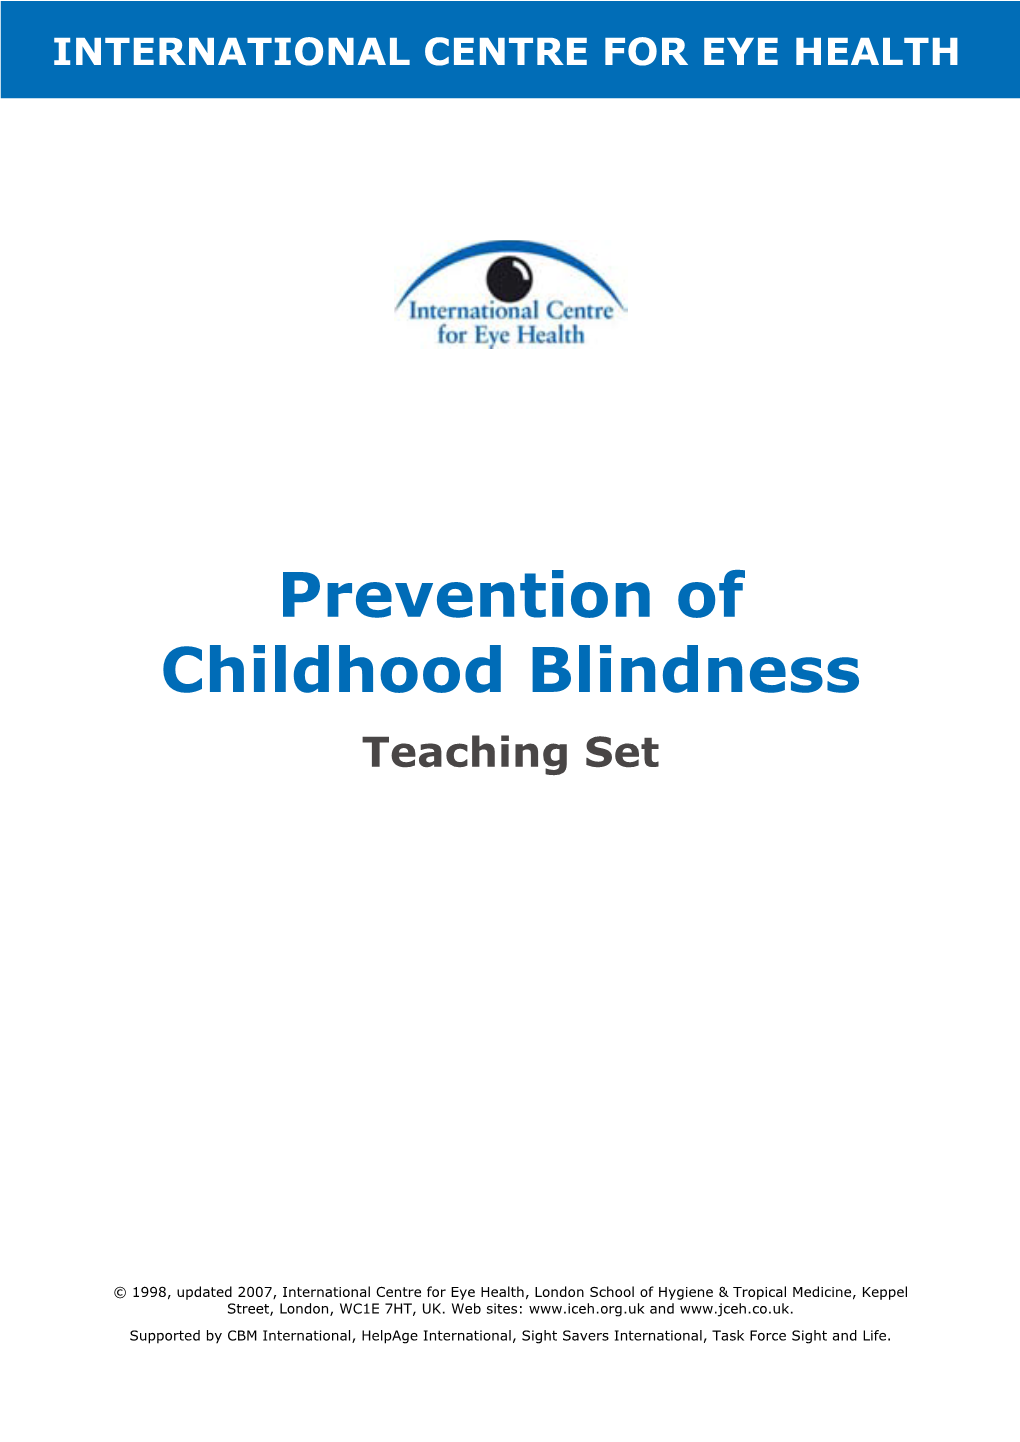 Prevention of Childhood Blindness Teaching Set